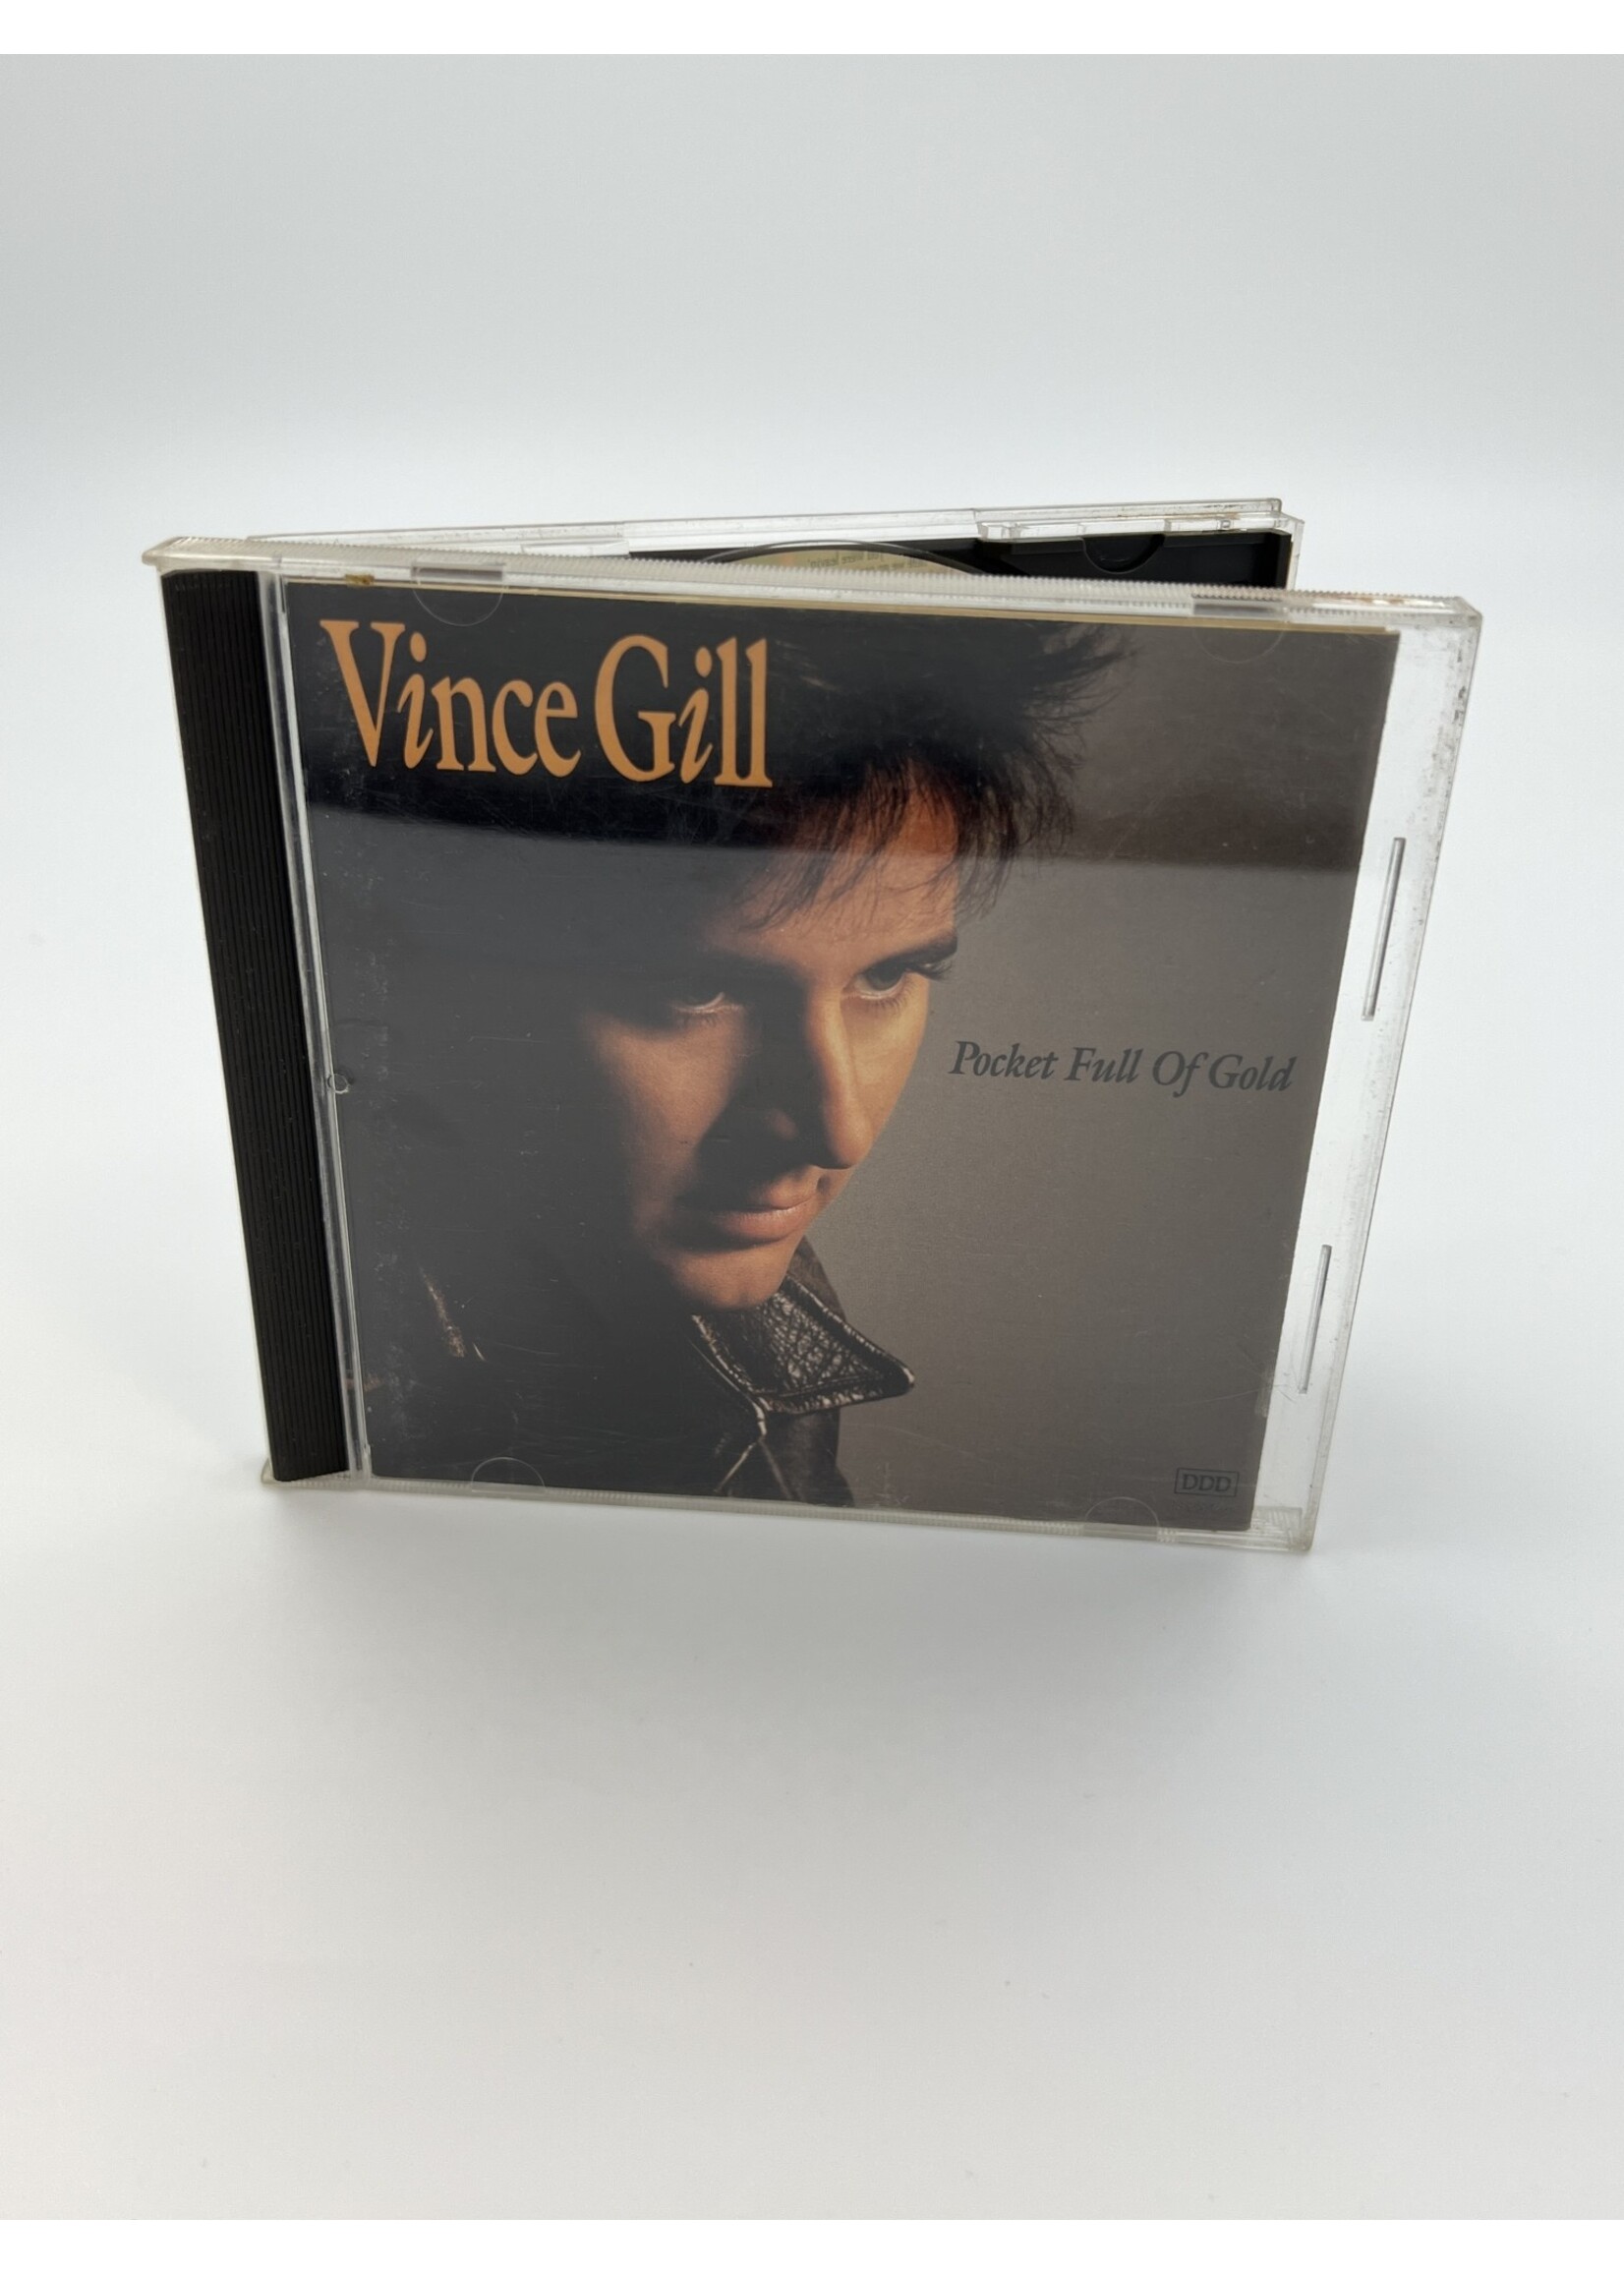 CD Vince Gill Pocket Full Of Gold CD